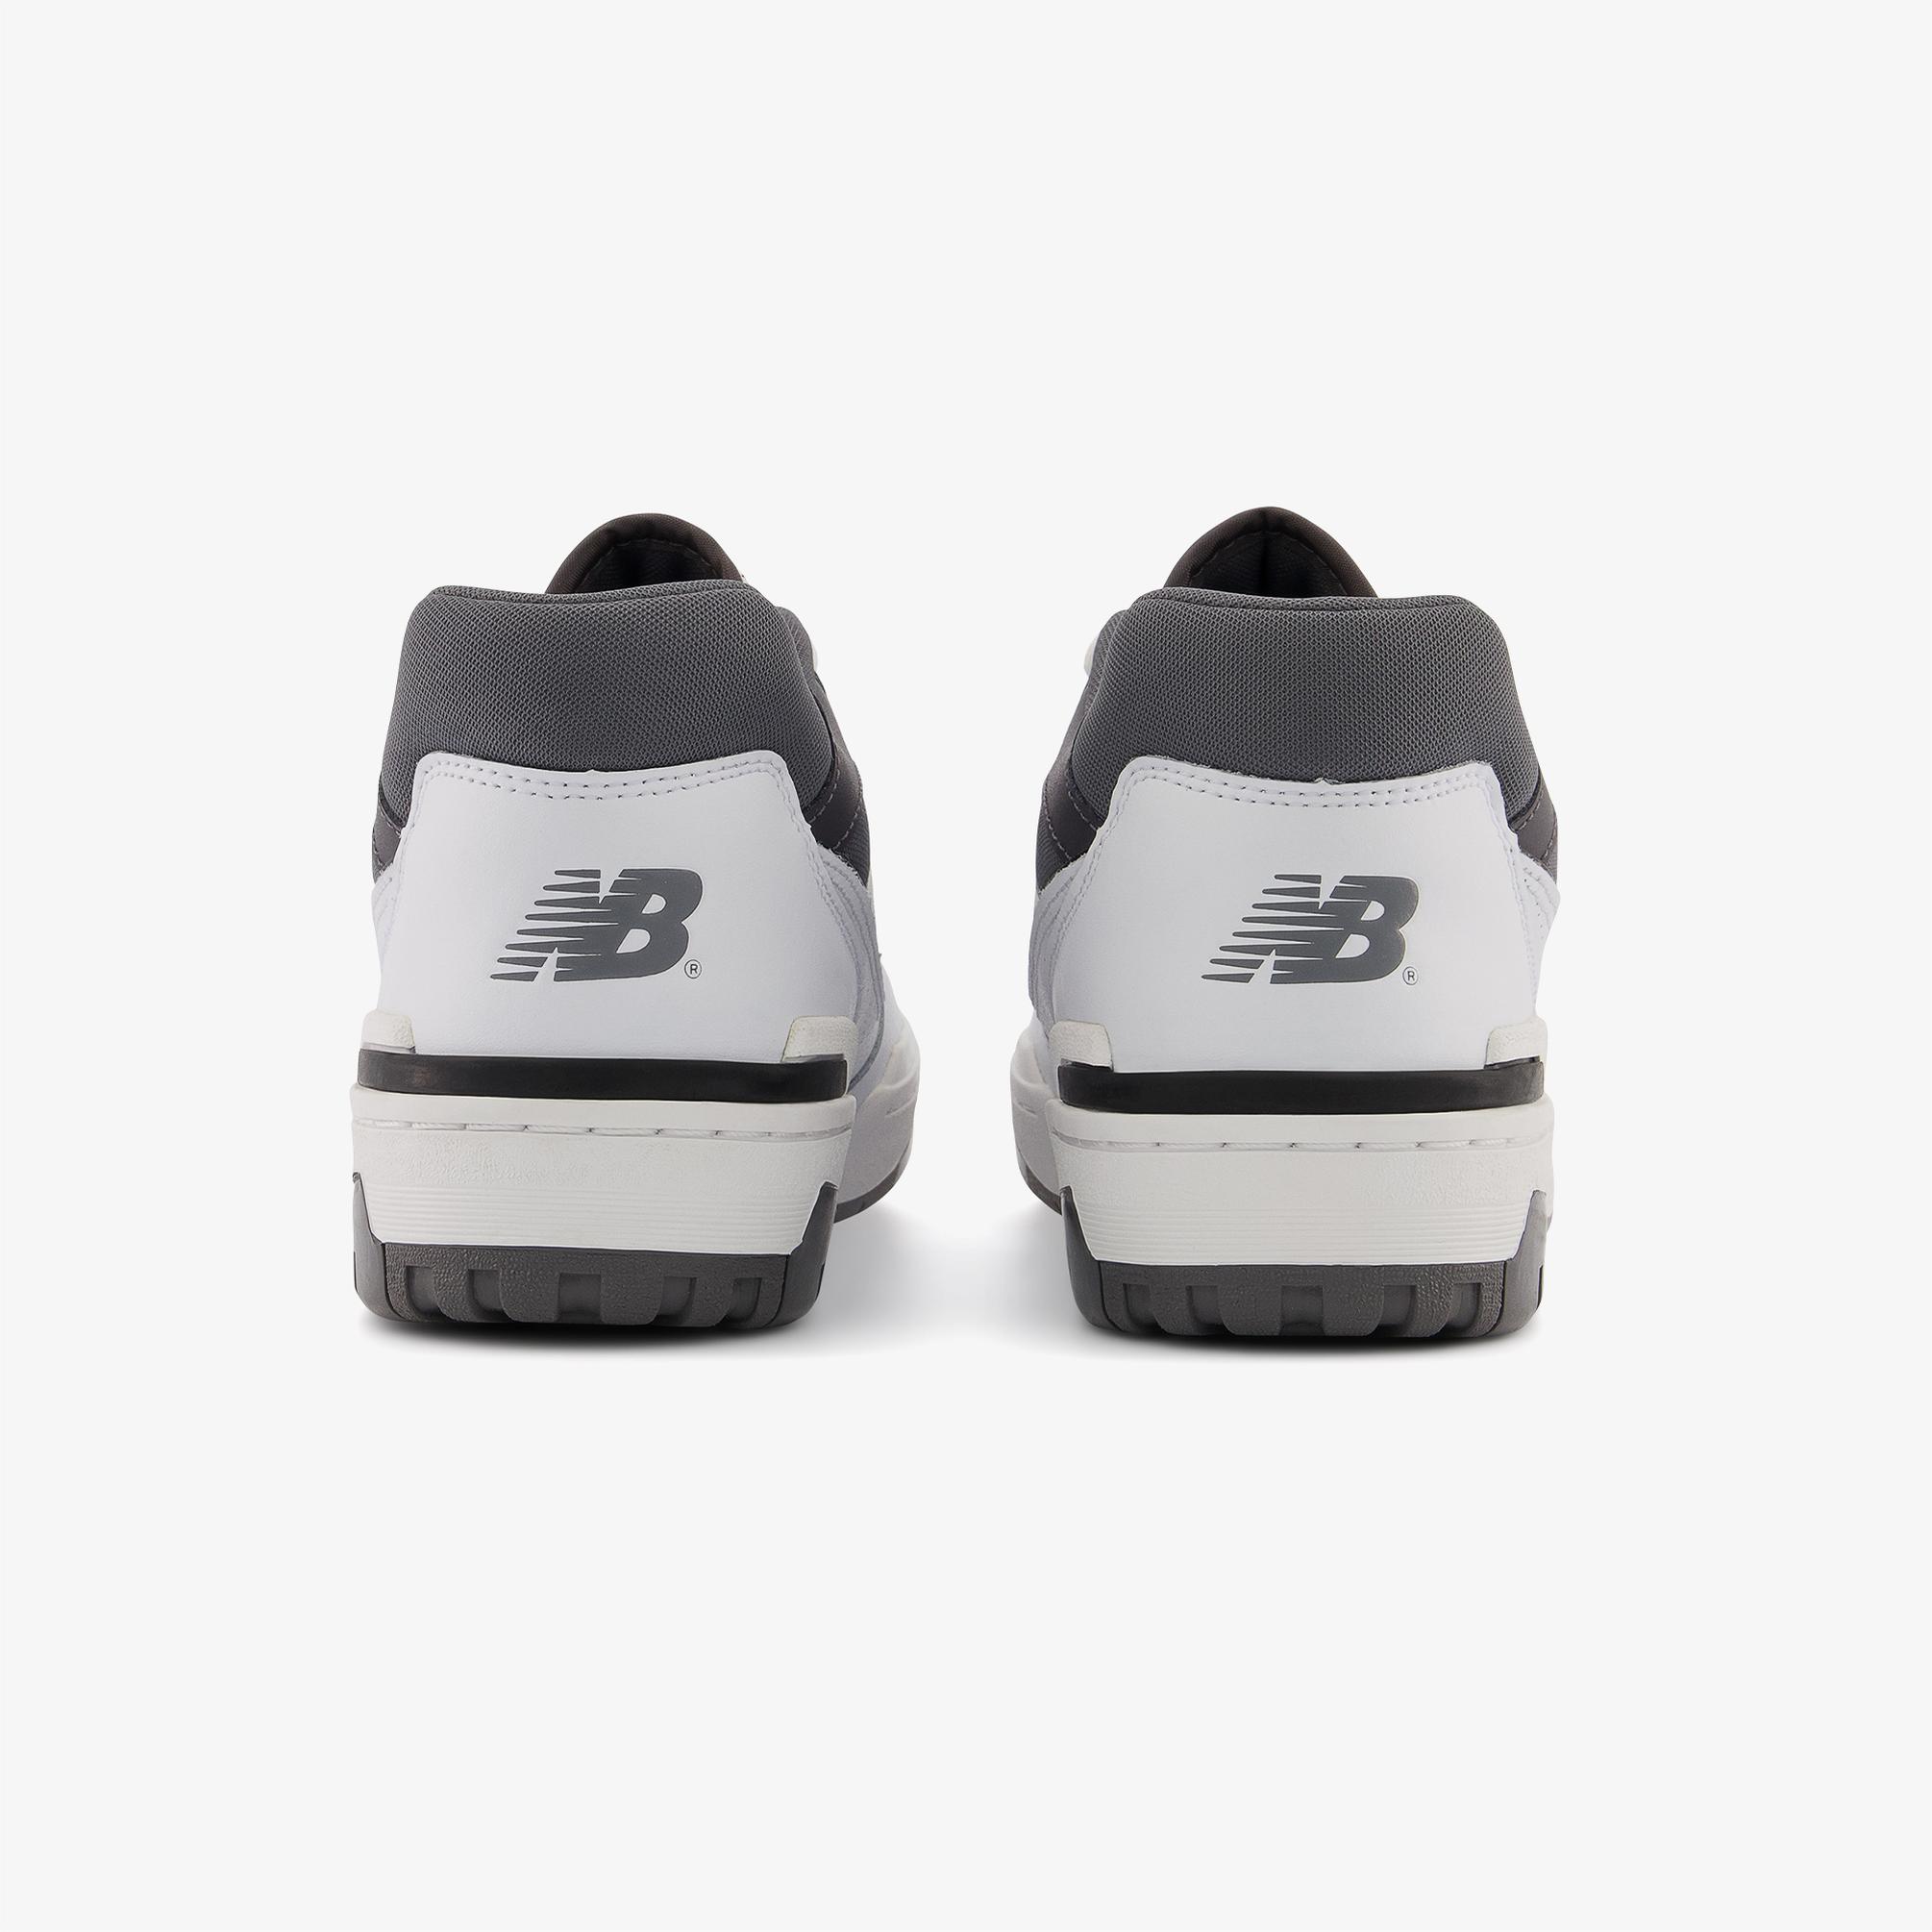  New Balance  550 Lifestyle Unisex Beyaz Spor Ayakkabı